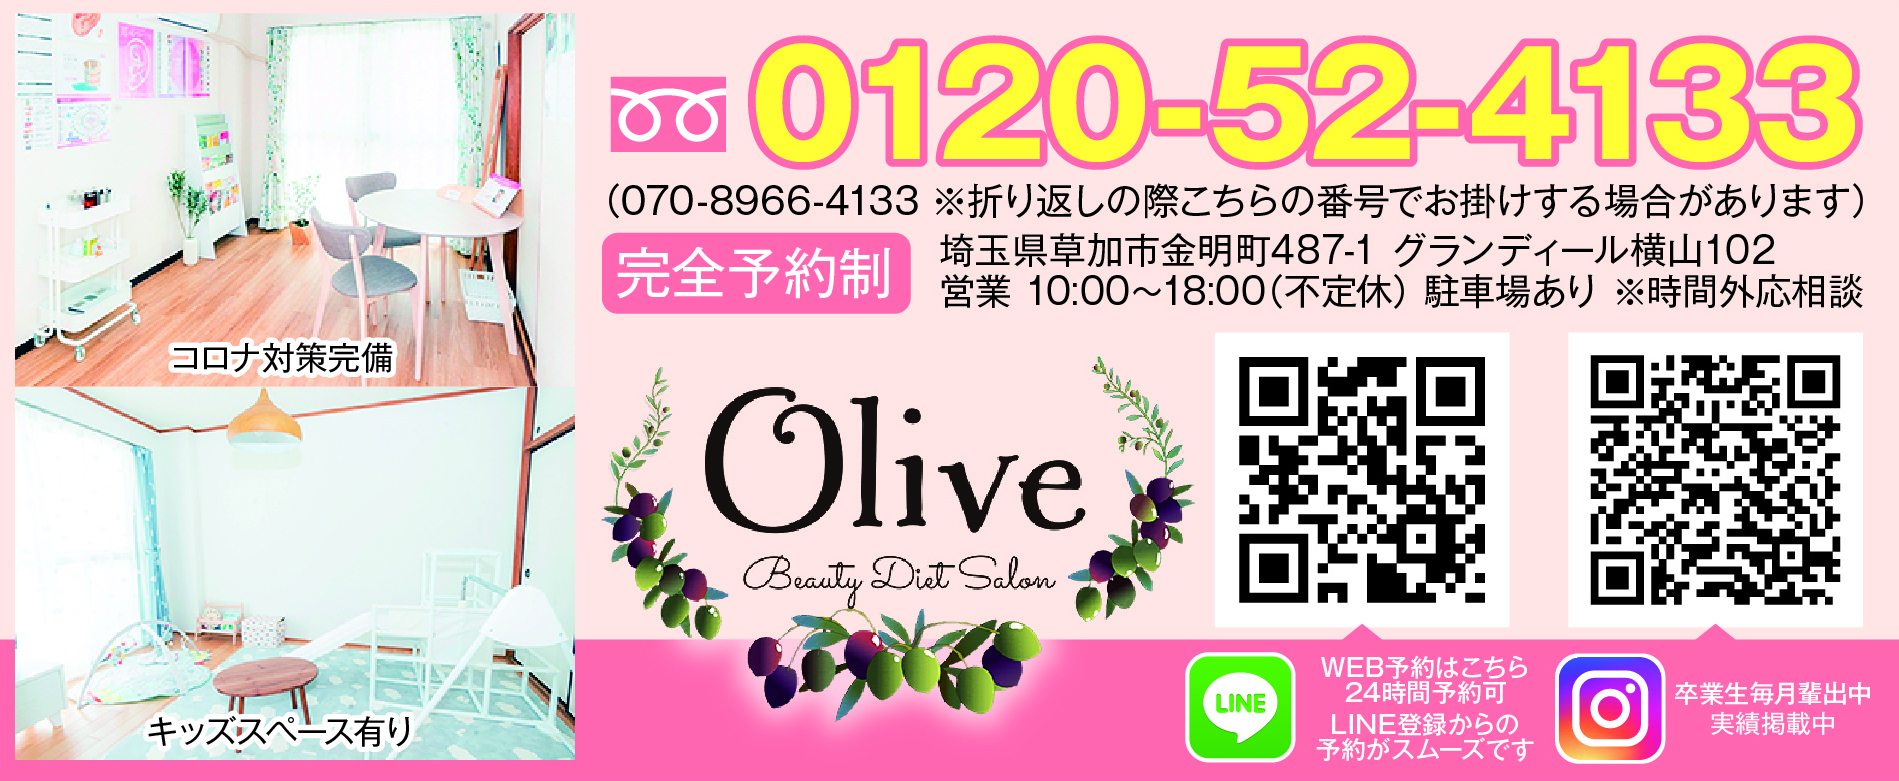 耳つぼダイエット「Olive」